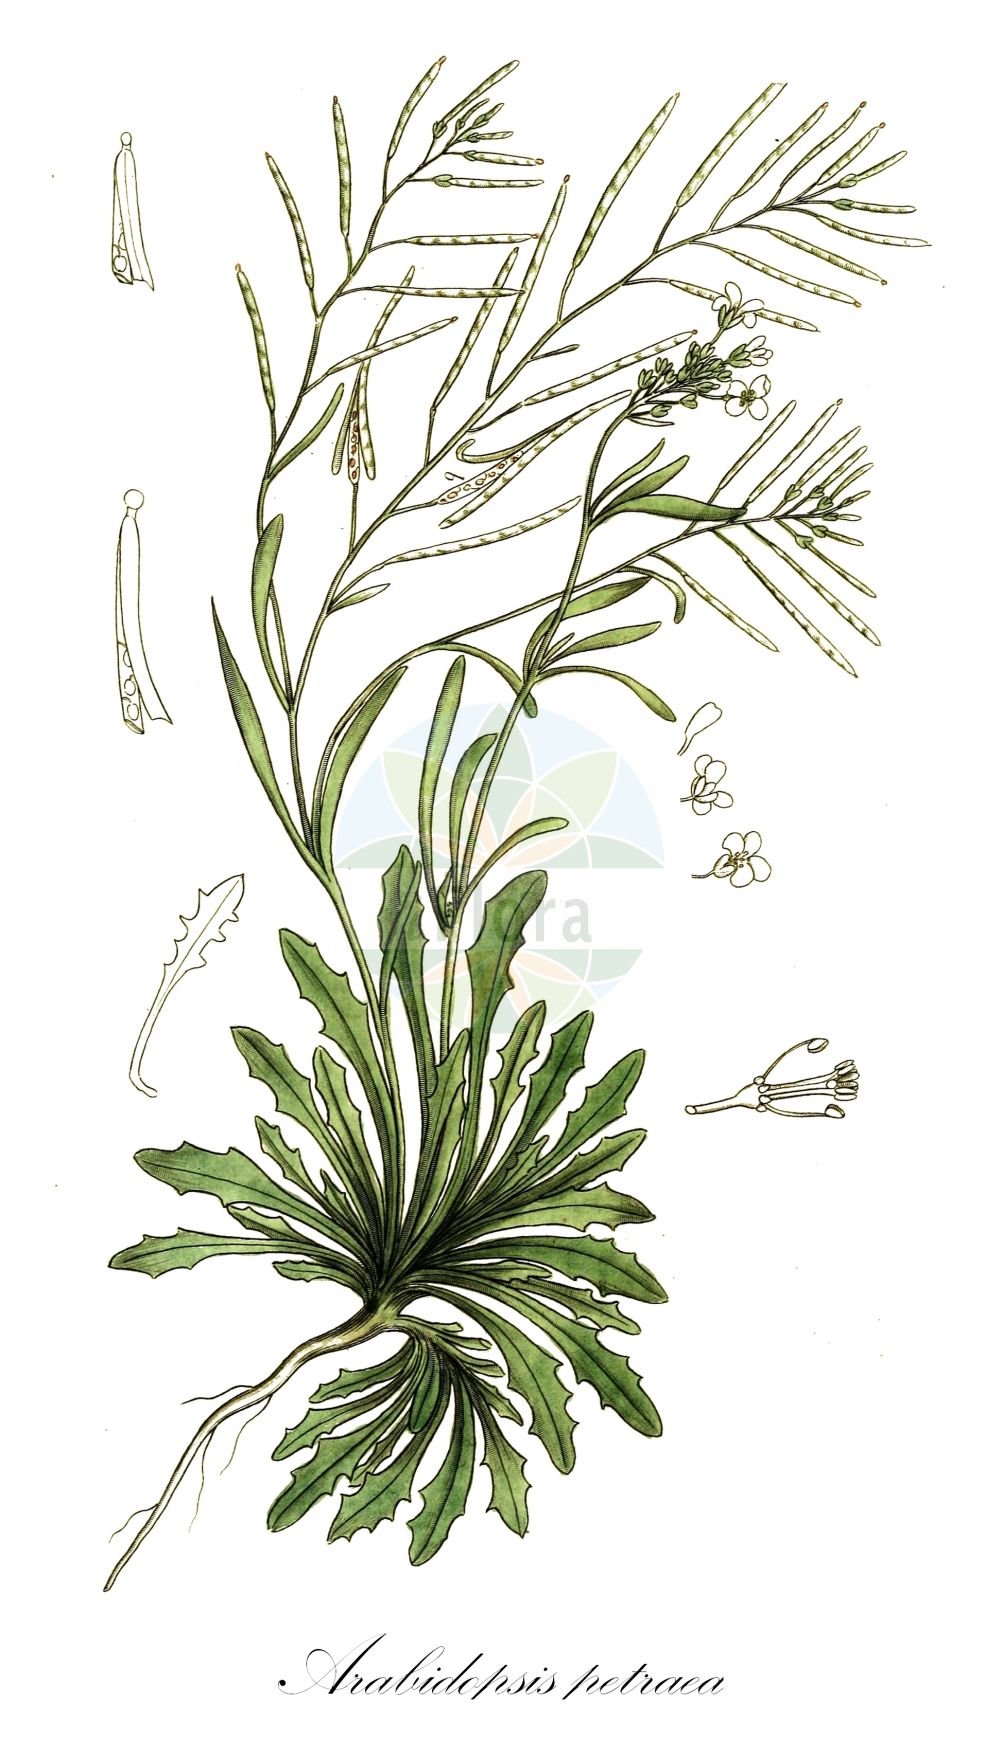 Historische Abbildung von Arabidopsis petraea (Felsen-Schmalwand - Lyrate Rockcress). Das Bild zeigt Blatt, Bluete, Frucht und Same. ---- Historical Drawing of Arabidopsis petraea (Felsen-Schmalwand - Lyrate Rockcress). The image is showing leaf, flower, fruit and seed.(Arabidopsis petraea,Felsen-Schmalwand,Lyrate Rockcress,Arabidopsis petraea,Arabis petraea,Arabis septentrionalis,Cardamine petraea,Cardaminopsis hispida,Cardaminopsis petraea,Cardaminopsis septentrionalis,Felsen-Schmalwand,Lyrate Rockcress,Arabidopsis,Schmalwand,Rockcress,Brassicaceae,Kreuzblütler,Cabbage family,Blatt,Bluete,Frucht,Same,leaf,flower,fruit,seed,Svensk Botanik (Svensk Botanik))